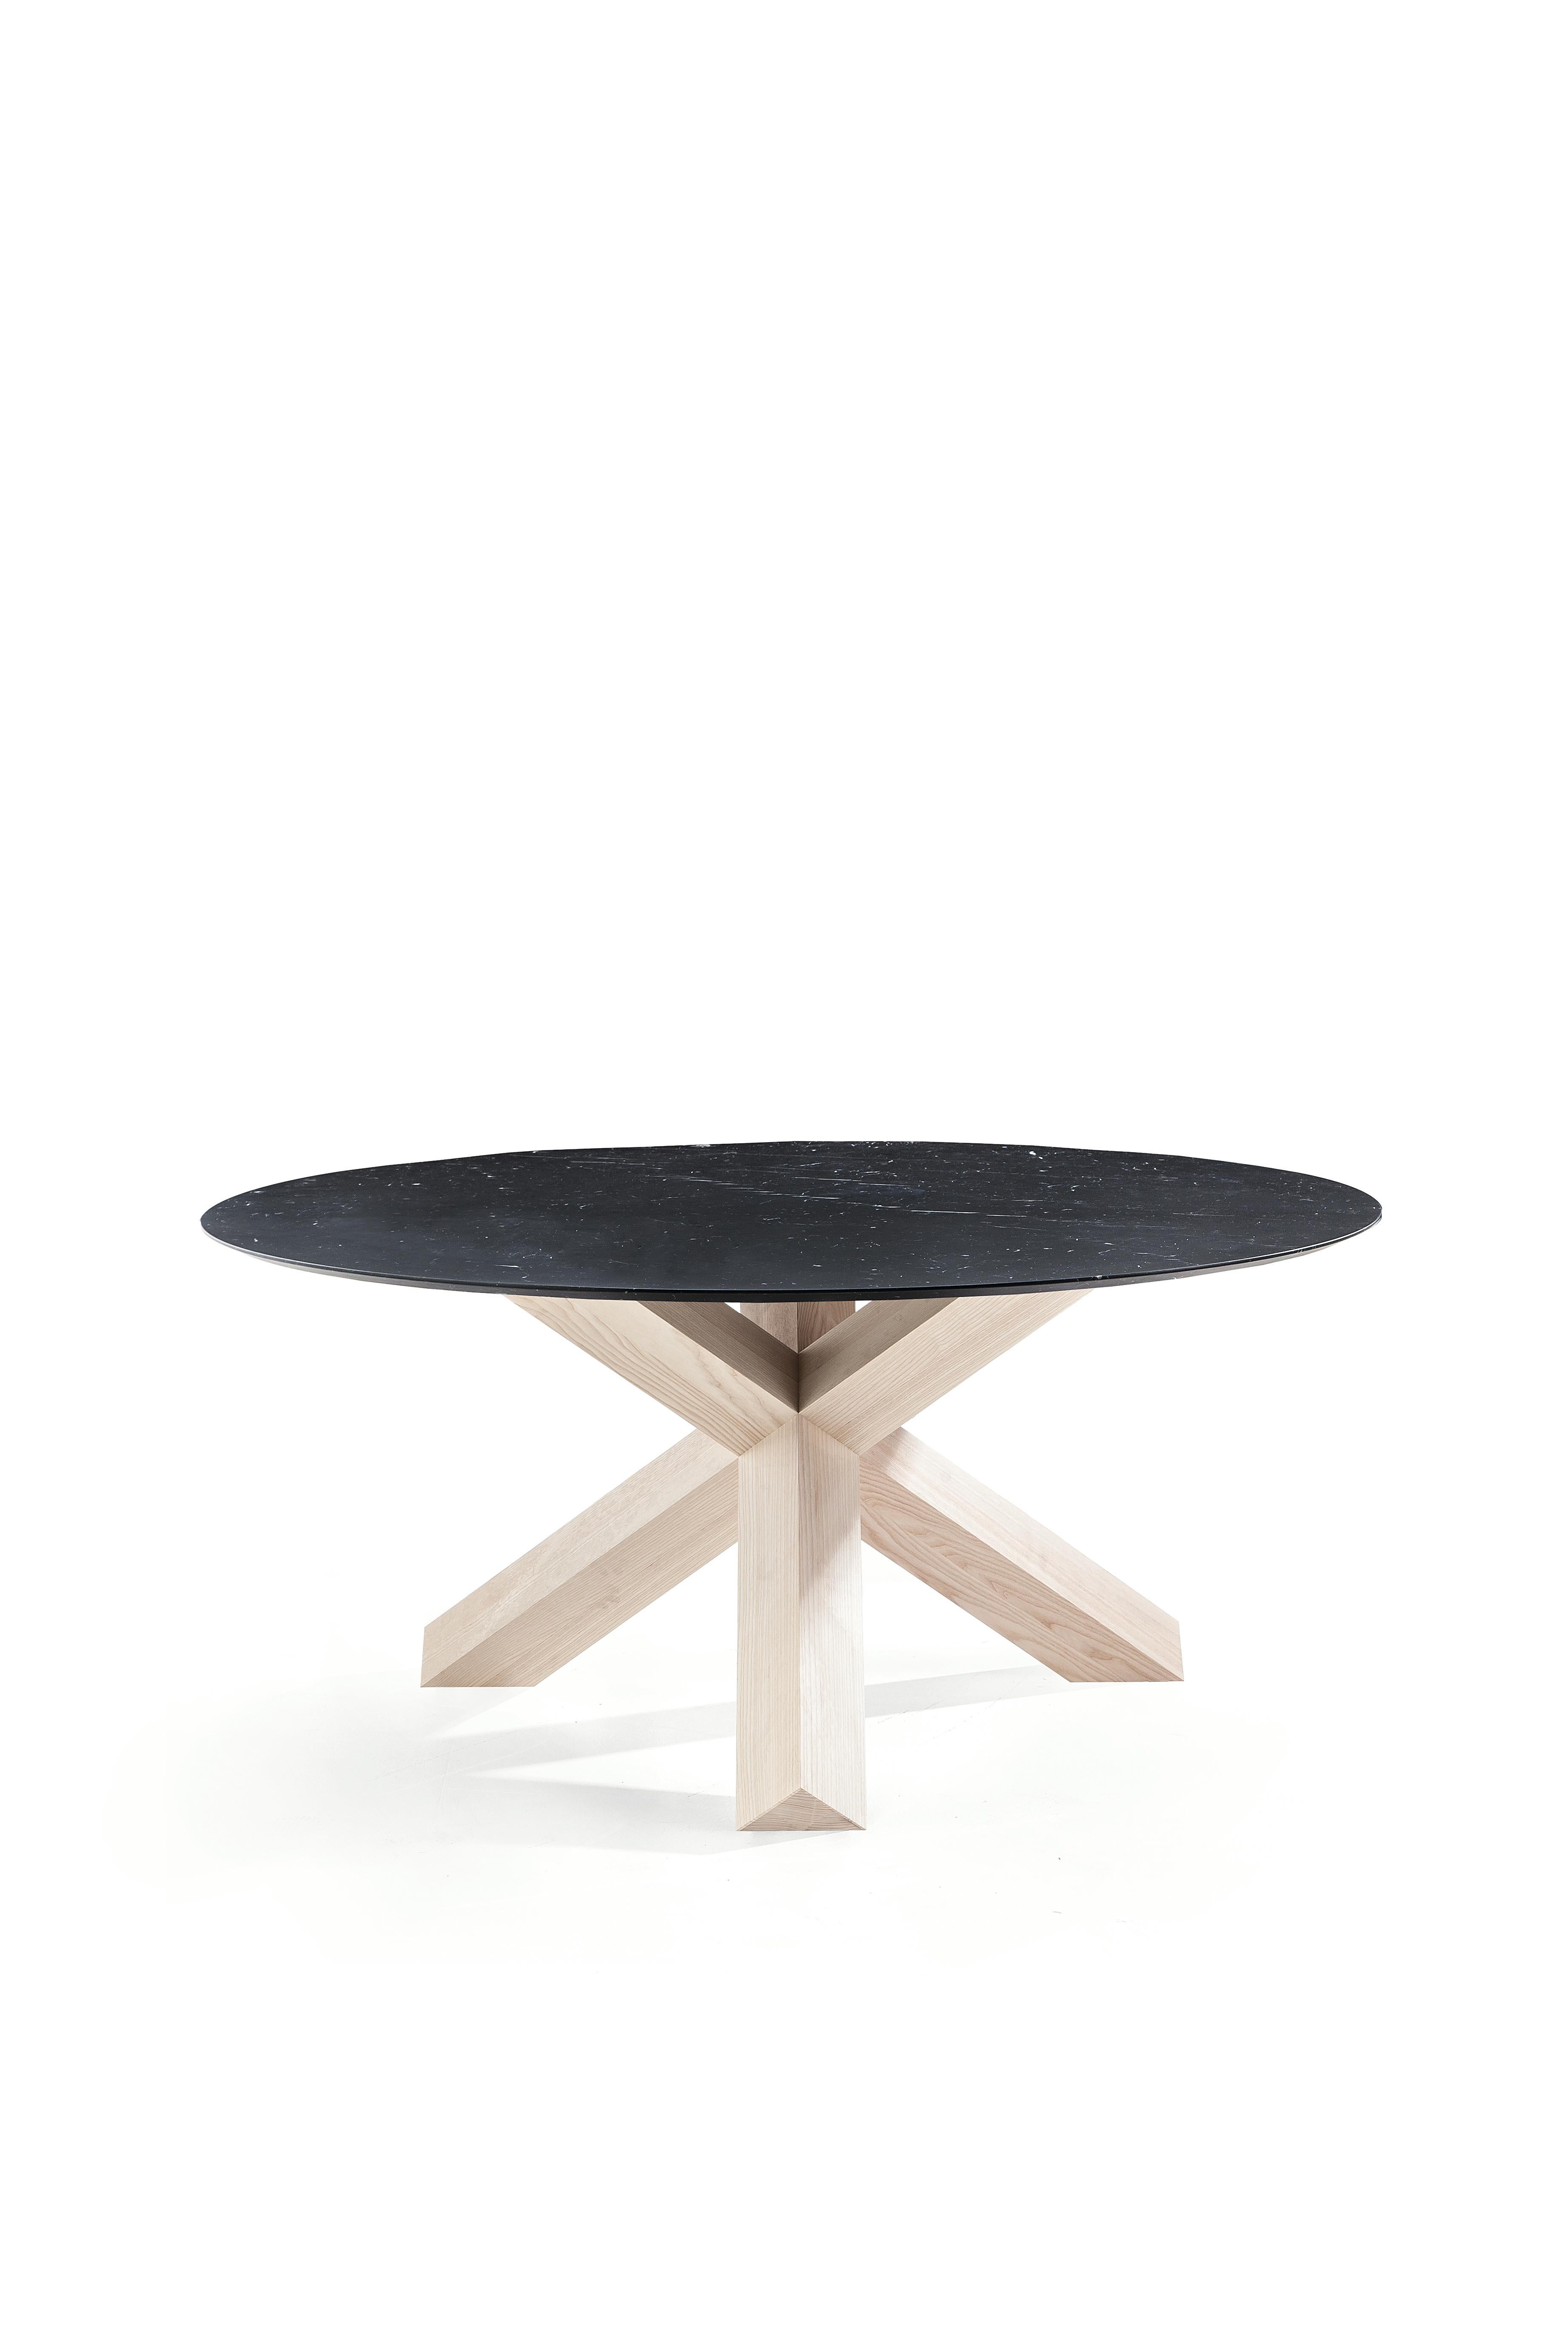 Mario Bellini La Rotonda Table by Cassina For Sale 2